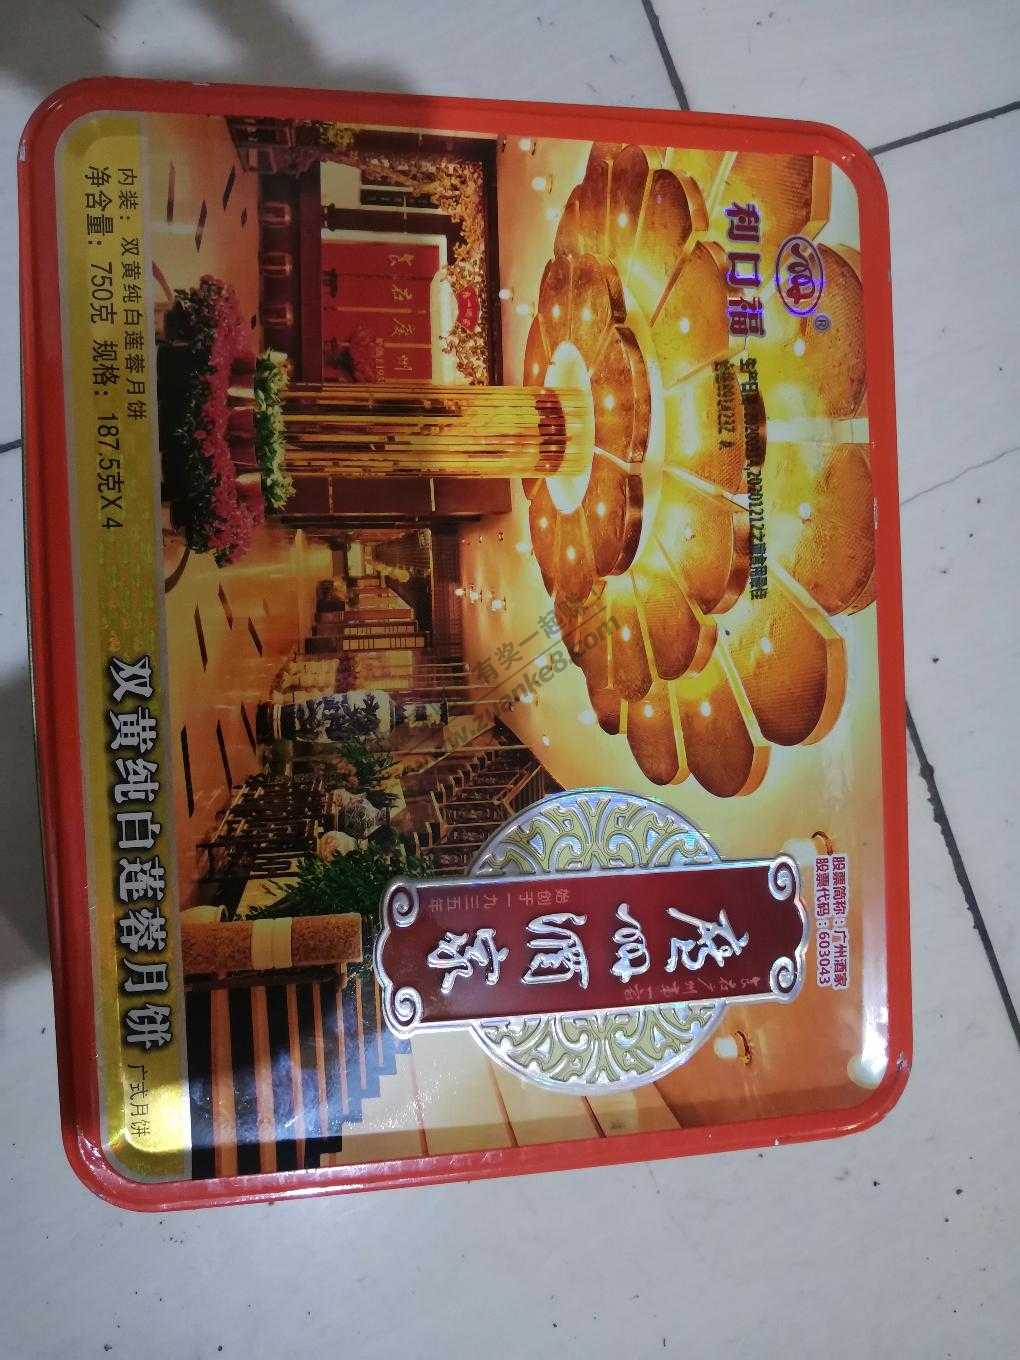 15一盒的 广州酒家月饼到了-惠小助(52huixz.com)